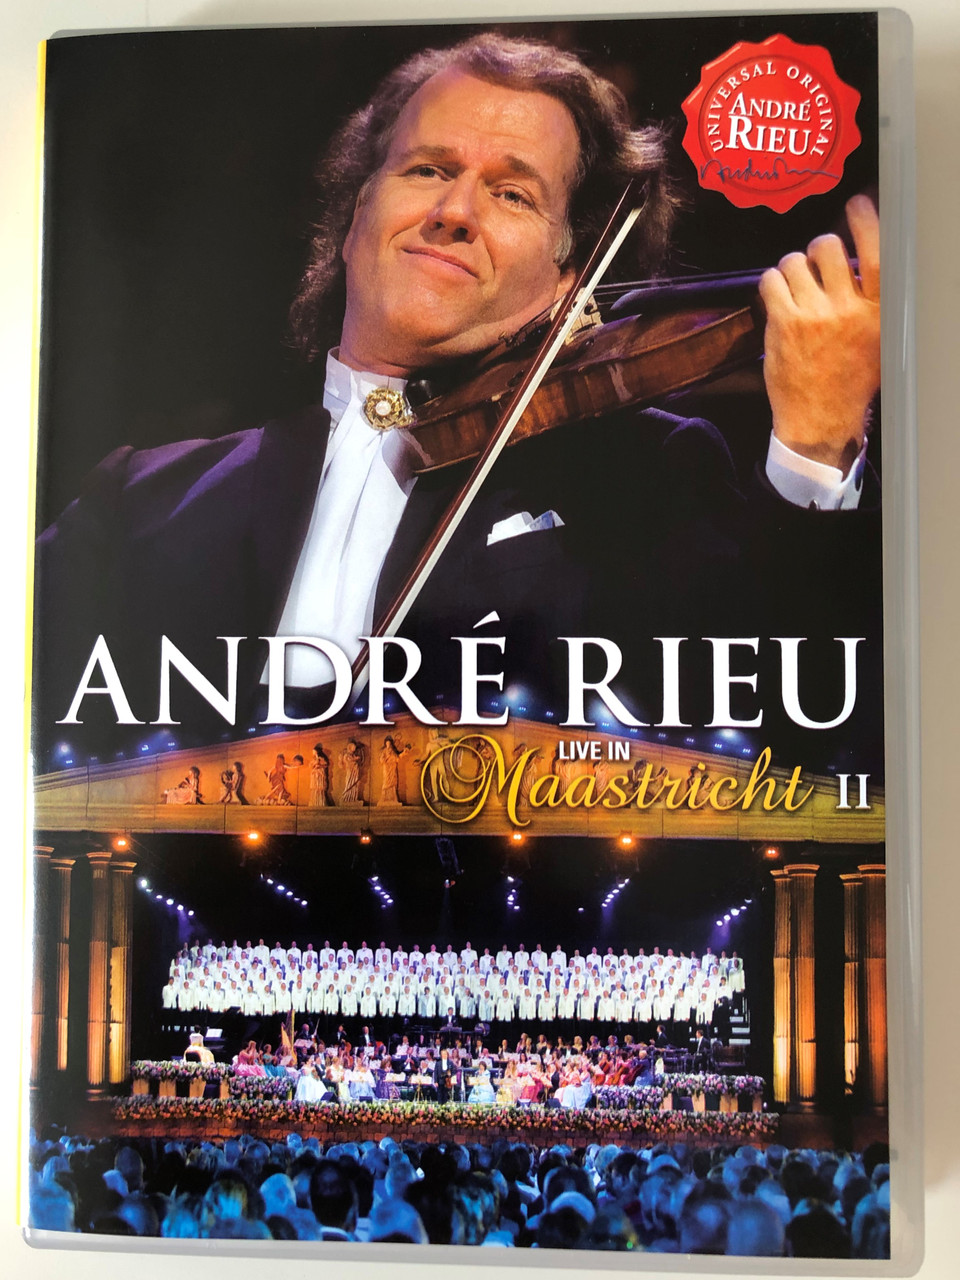 André Rieu DVD 2008 Live in Maastricht II / Directed by Pit Weyrich / 76  trombones, Nessun dorma, Il Silenzio, Twelve robbers - bibleinmylanguage